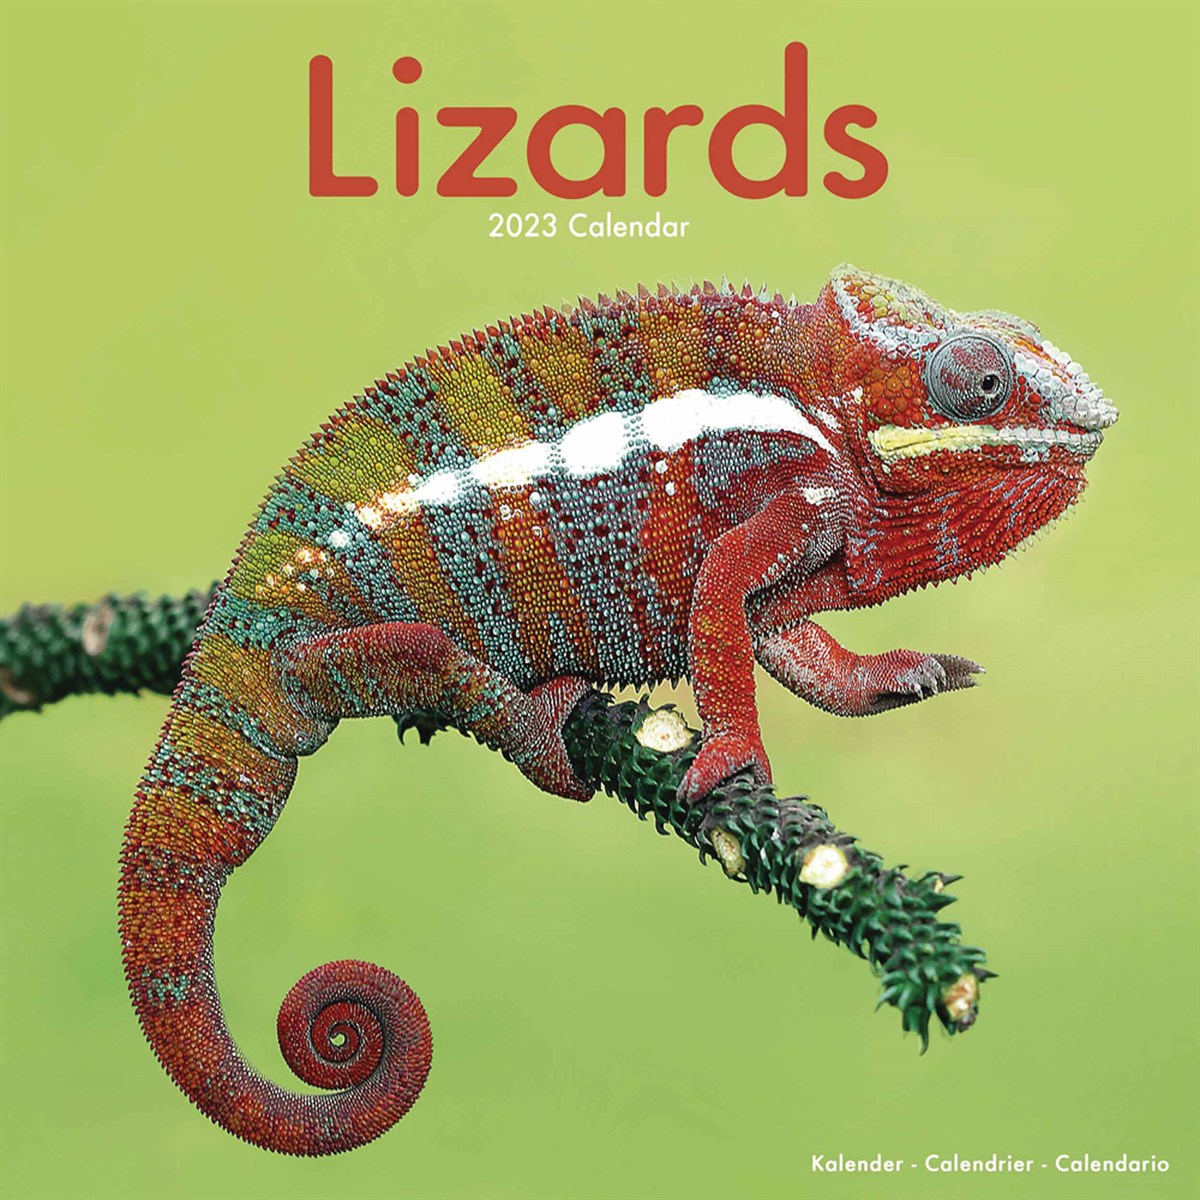 Lizards 2023 Calendars